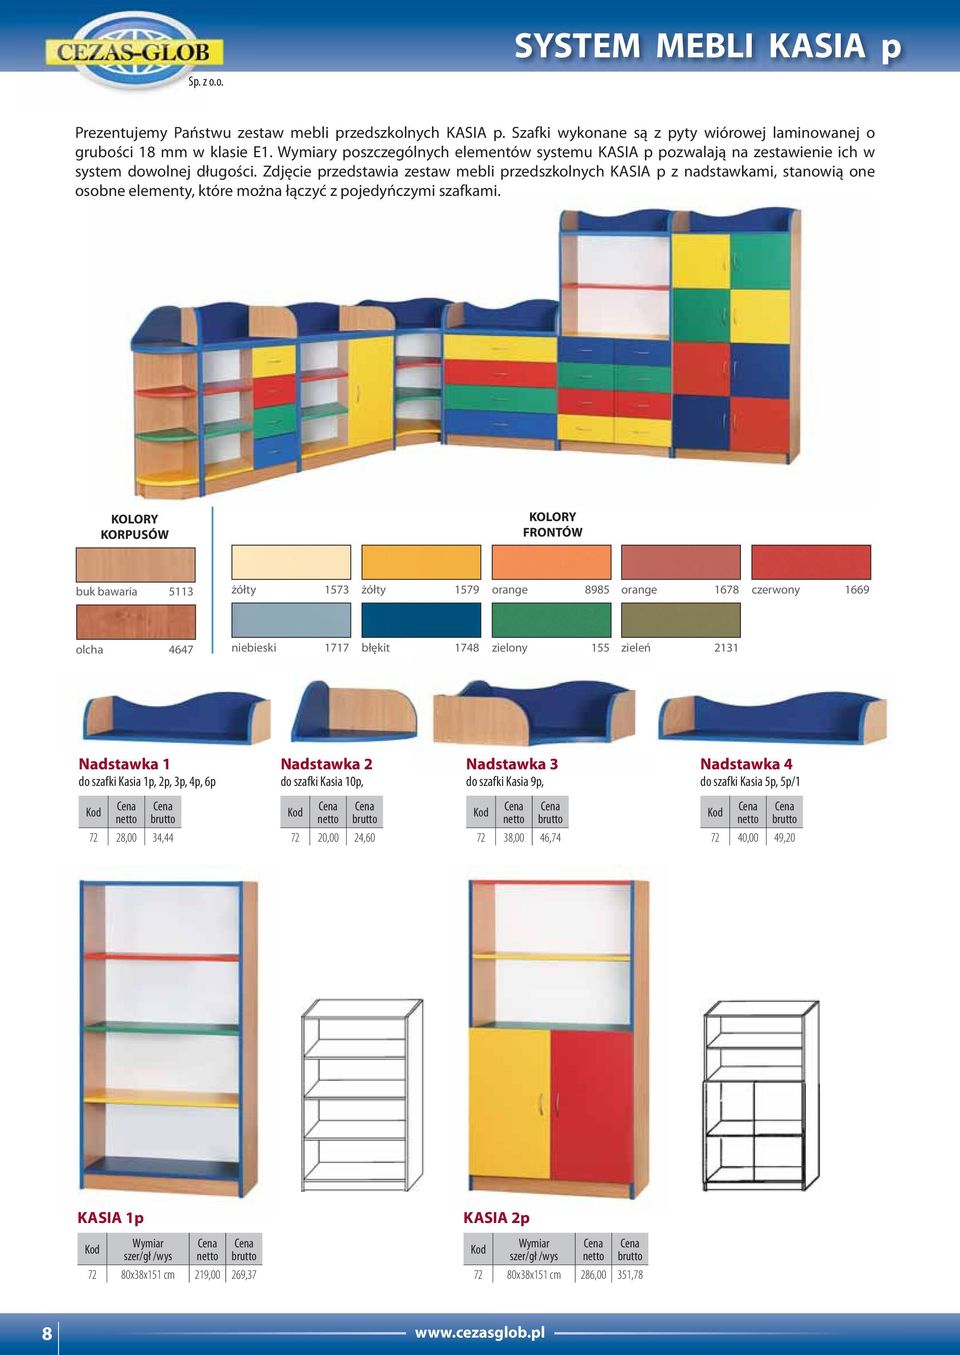 Zdjęcie przedstawia zestaw mebli przedszkolnych KASIA p z nadstawkami, stanowią one osobne elementy, które można łączyć z pojedyńczymi szafkami.